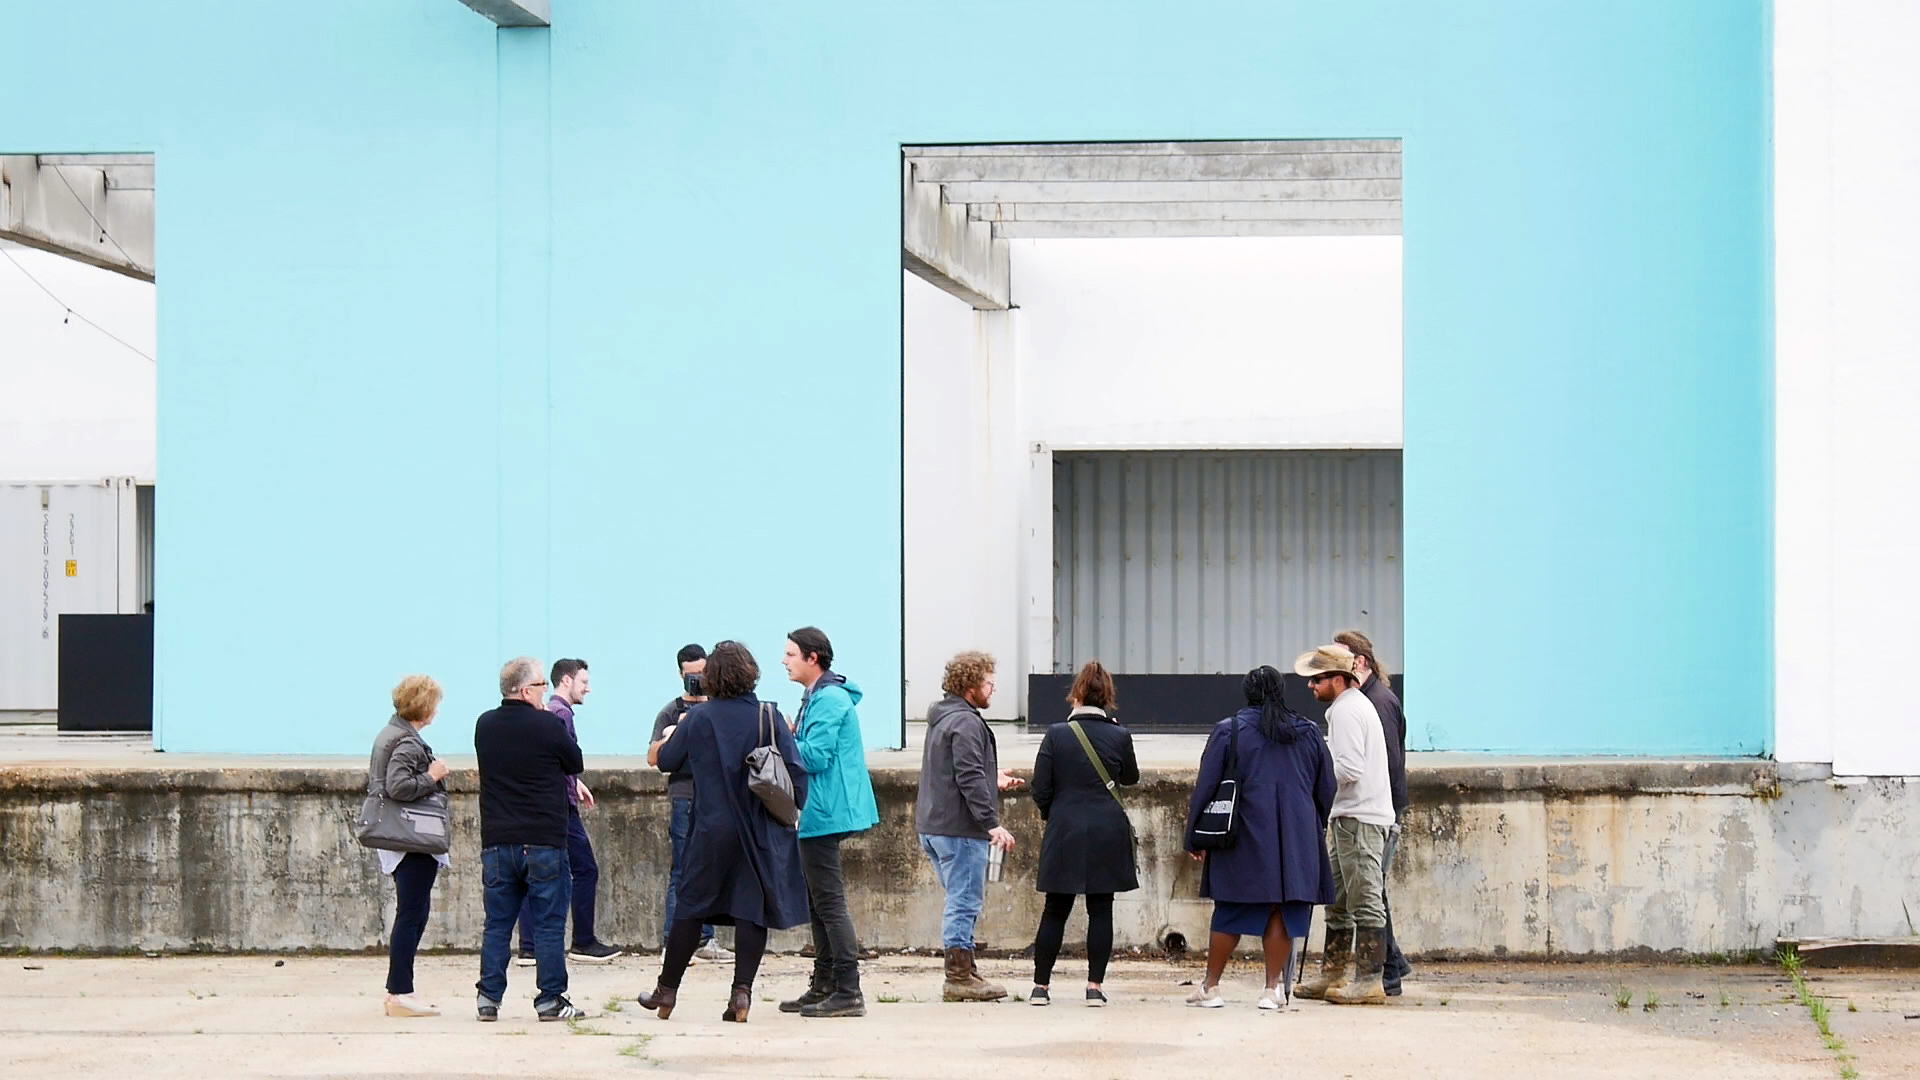 照片中人们站在浅蓝色的建筑墙前